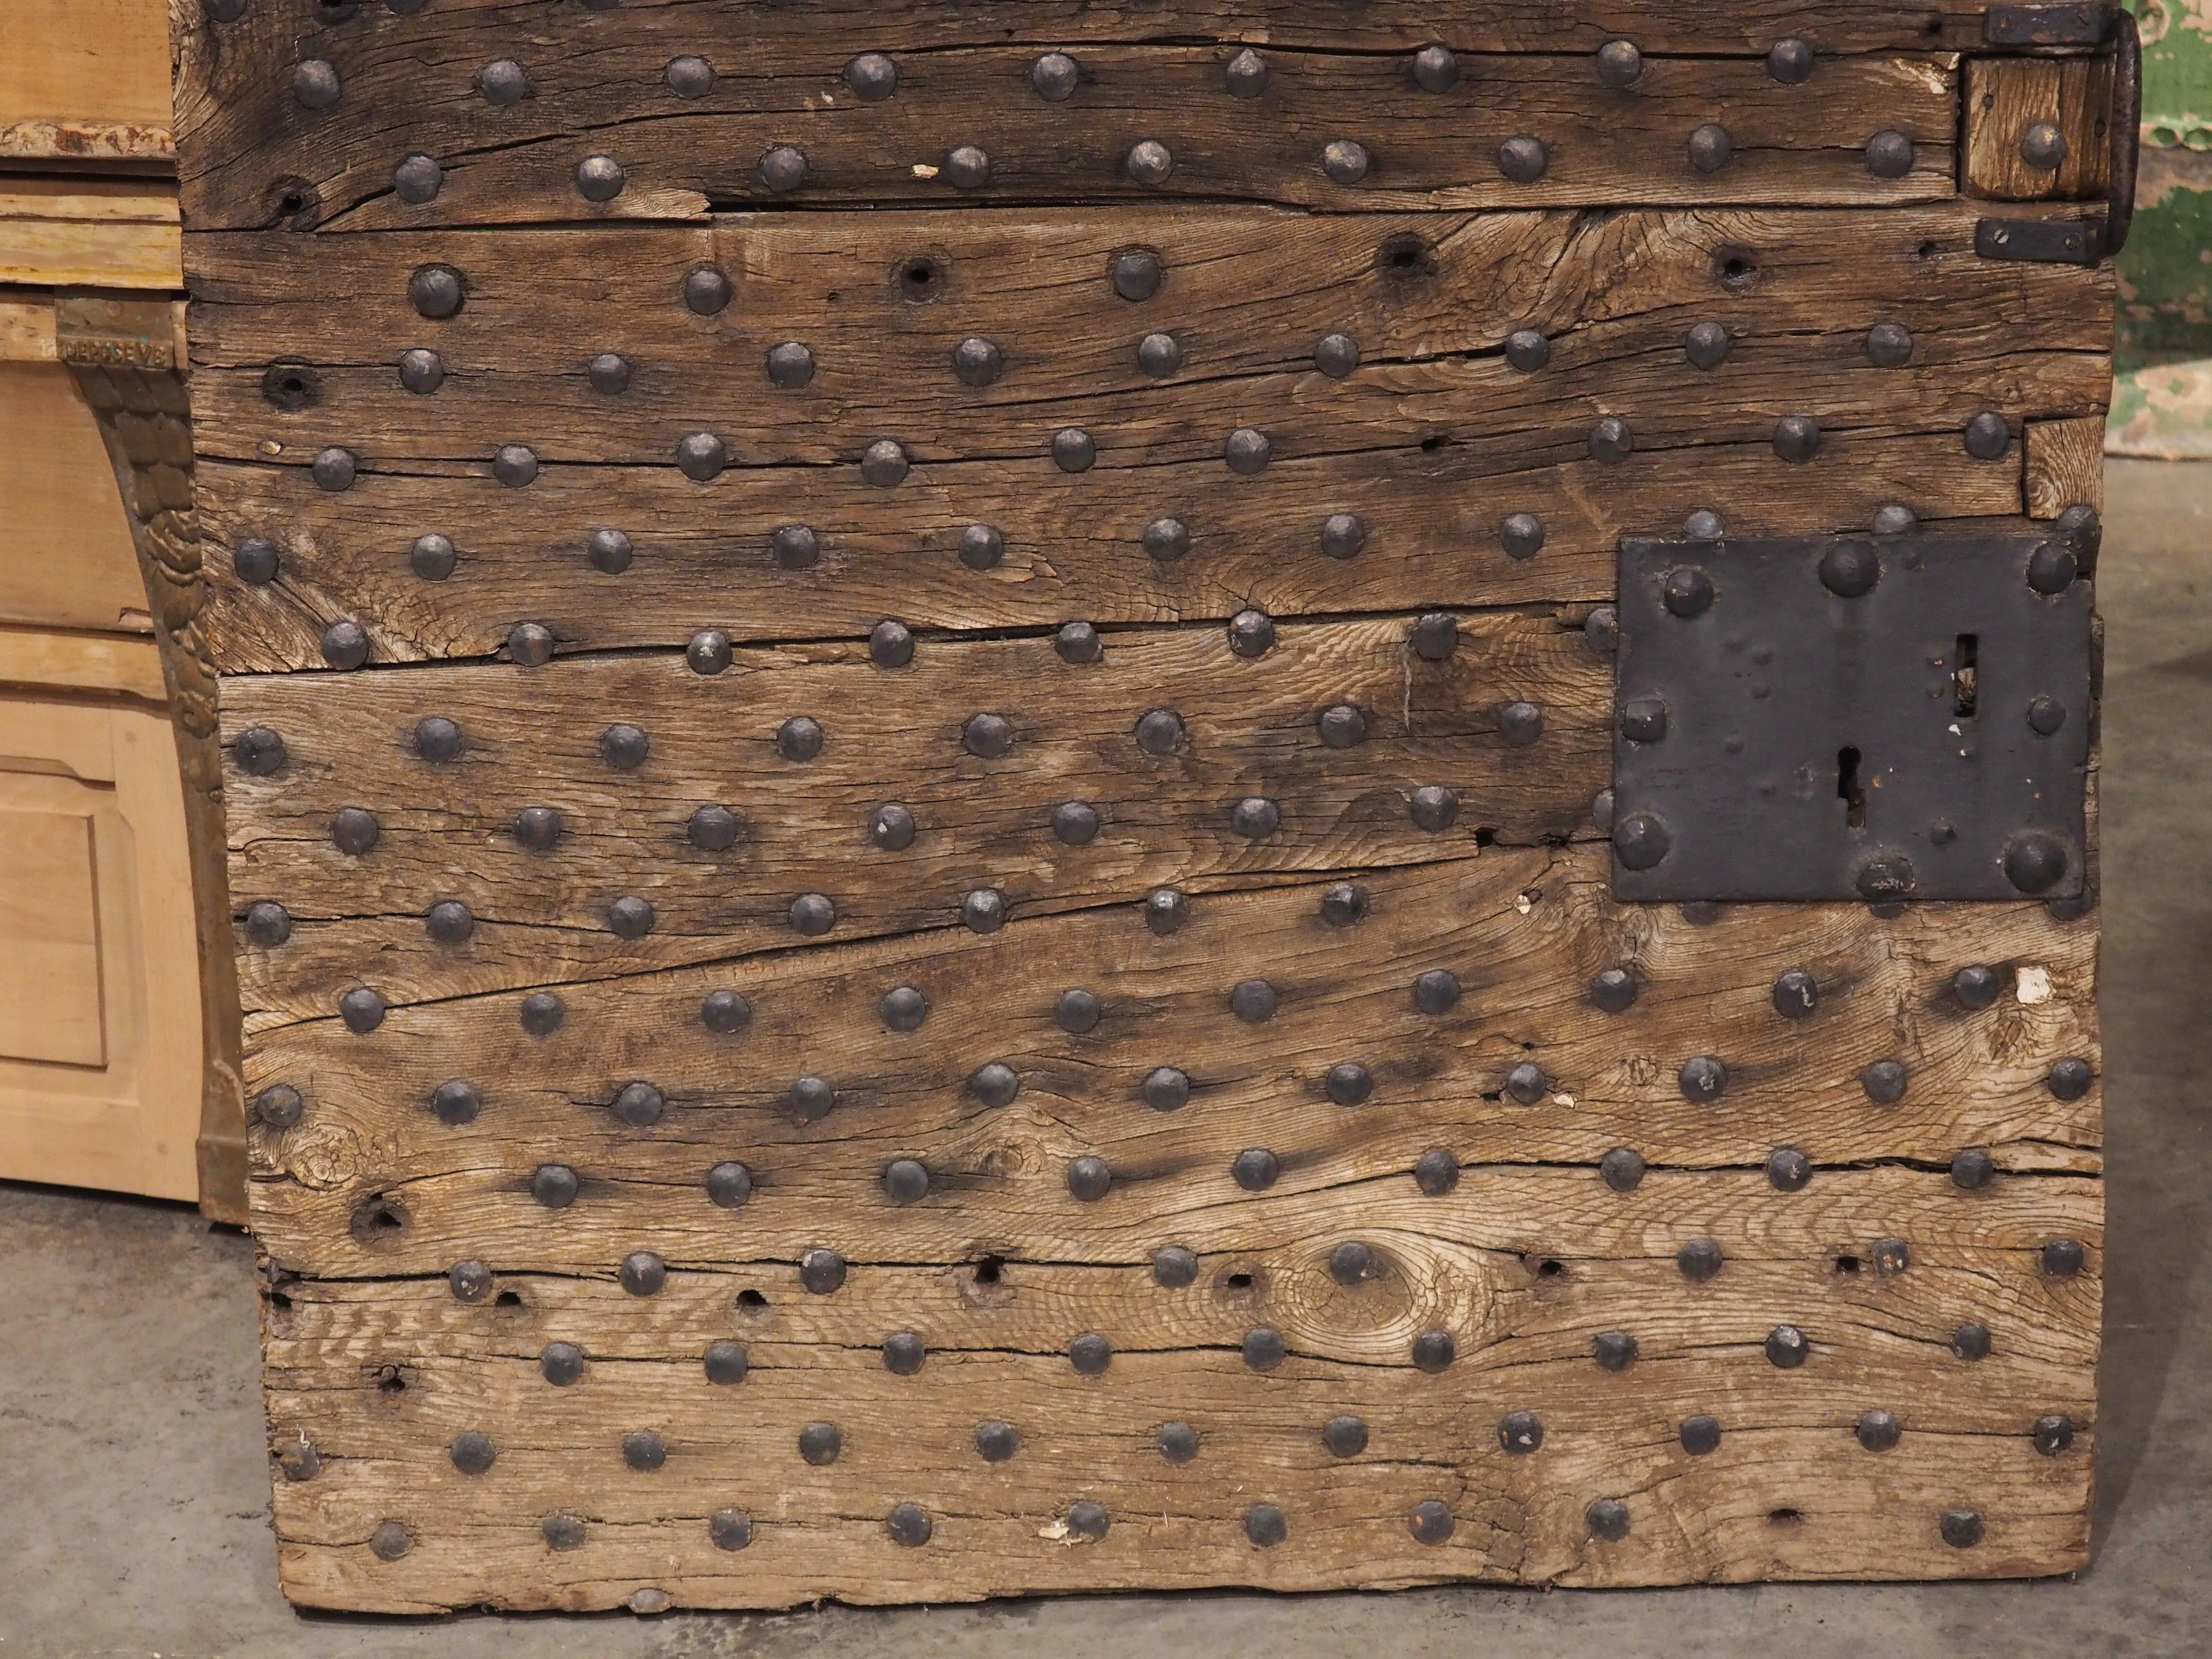 Diese Porte cachot (Kerkertür) stammt aus einem Gefängnis in Romans-Sur-Isere (Frankreich) und hat eine Außenfassade, die mit Hunderten von in 32 Reihen angeordneten eisernen Nagelköpfen verziert ist. Die drei Zoll dicke Tür wurde um 1700